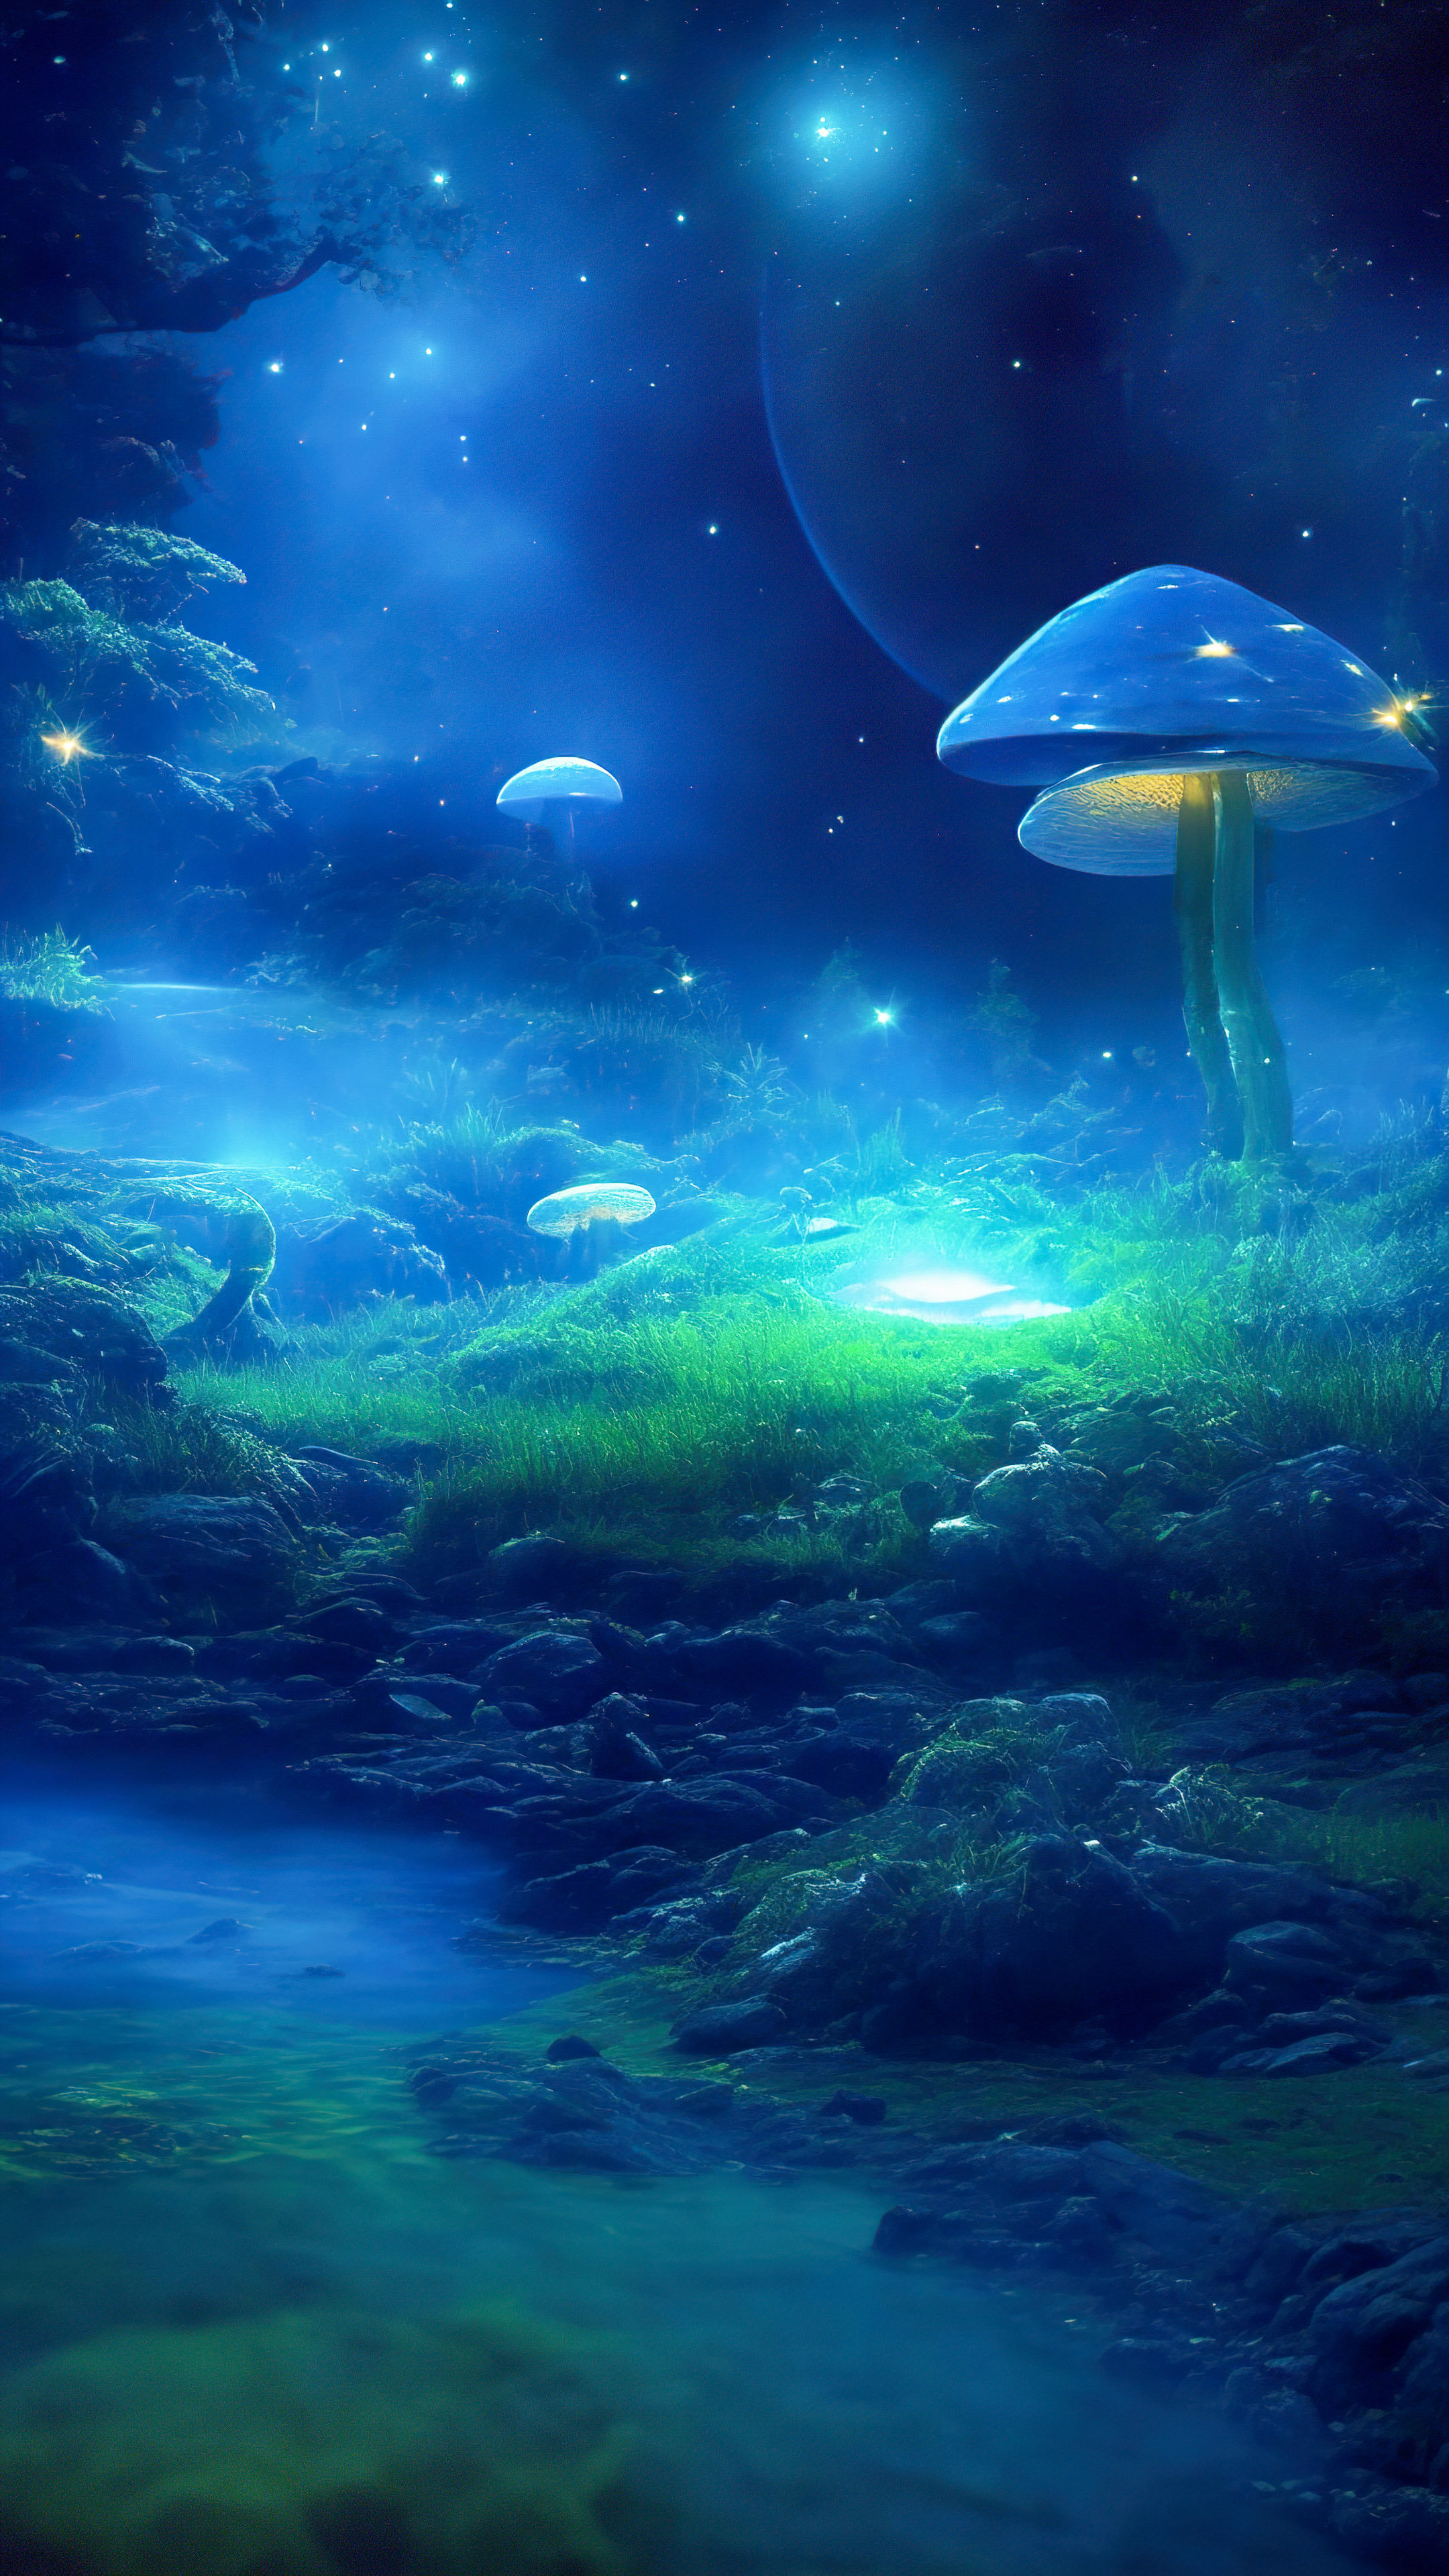 Découvrez notre fond d'écran de minuit, illustrant une clairière mystique avec des champignons bioluminescents, créant une scène enchantée et surnaturelle.